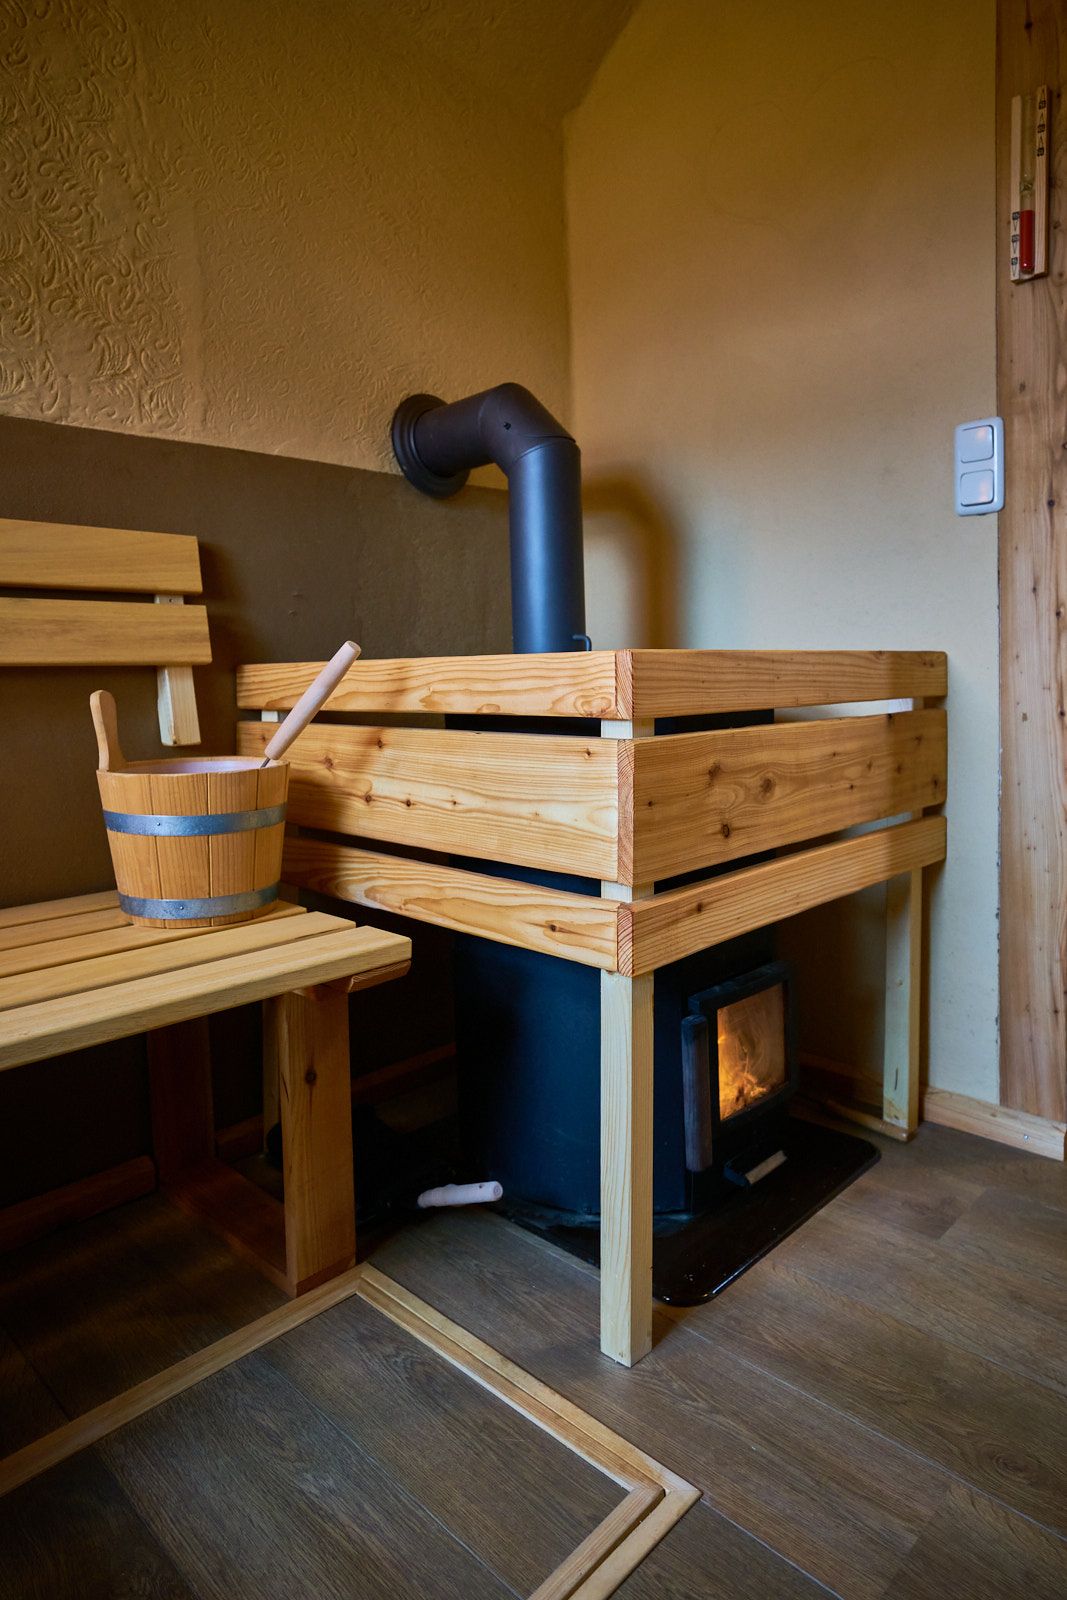 Der heiße Ofen mit 20kW Leistung wartet auf Ihren Saunagang